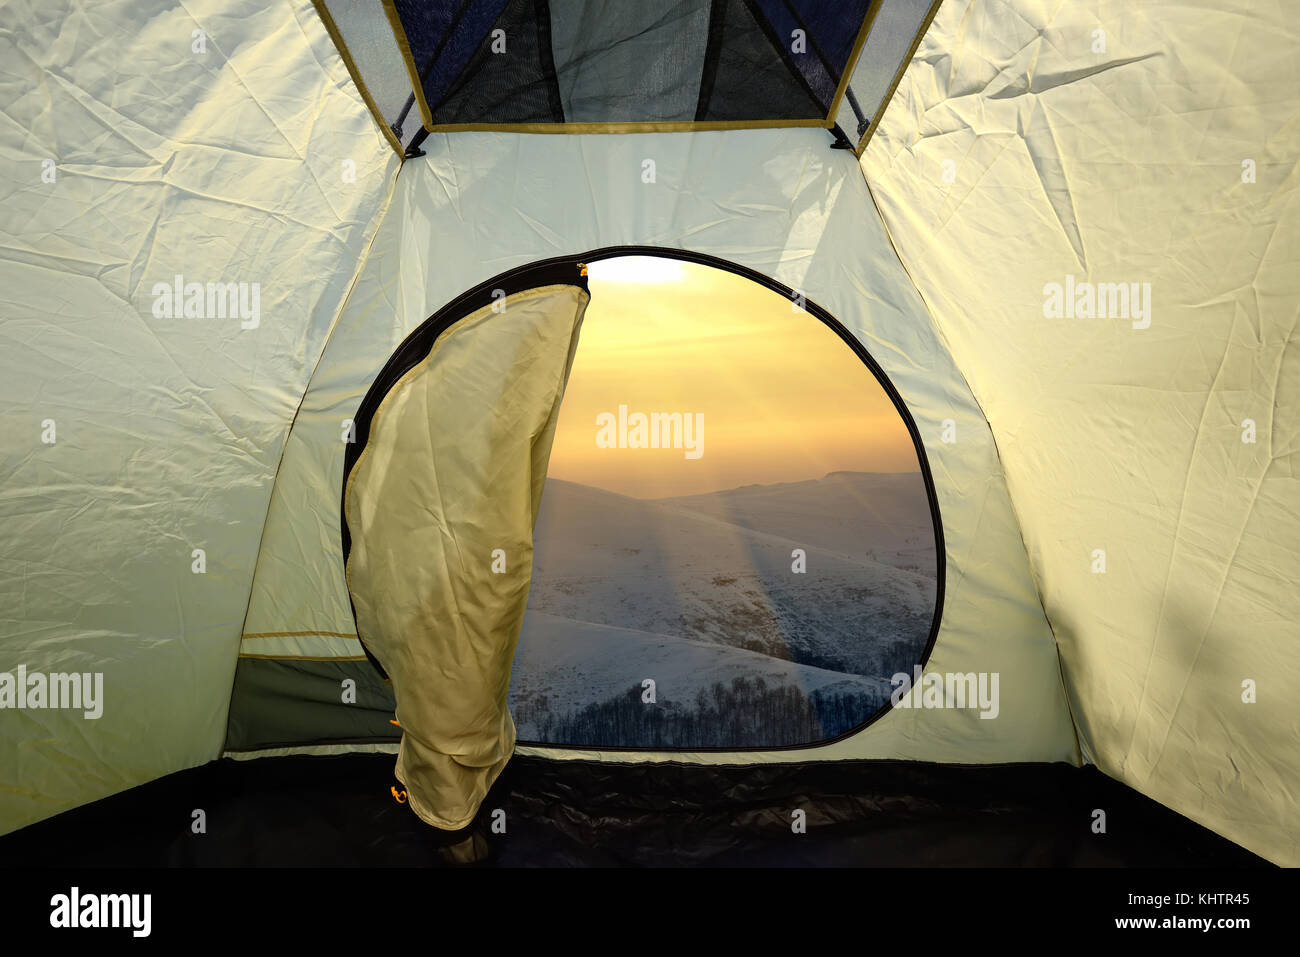 Vista dall'interno di una tenda sulle montagne paesaggio. Stile di vita viaggio avventura concetto vacanze outdoor Foto Stock